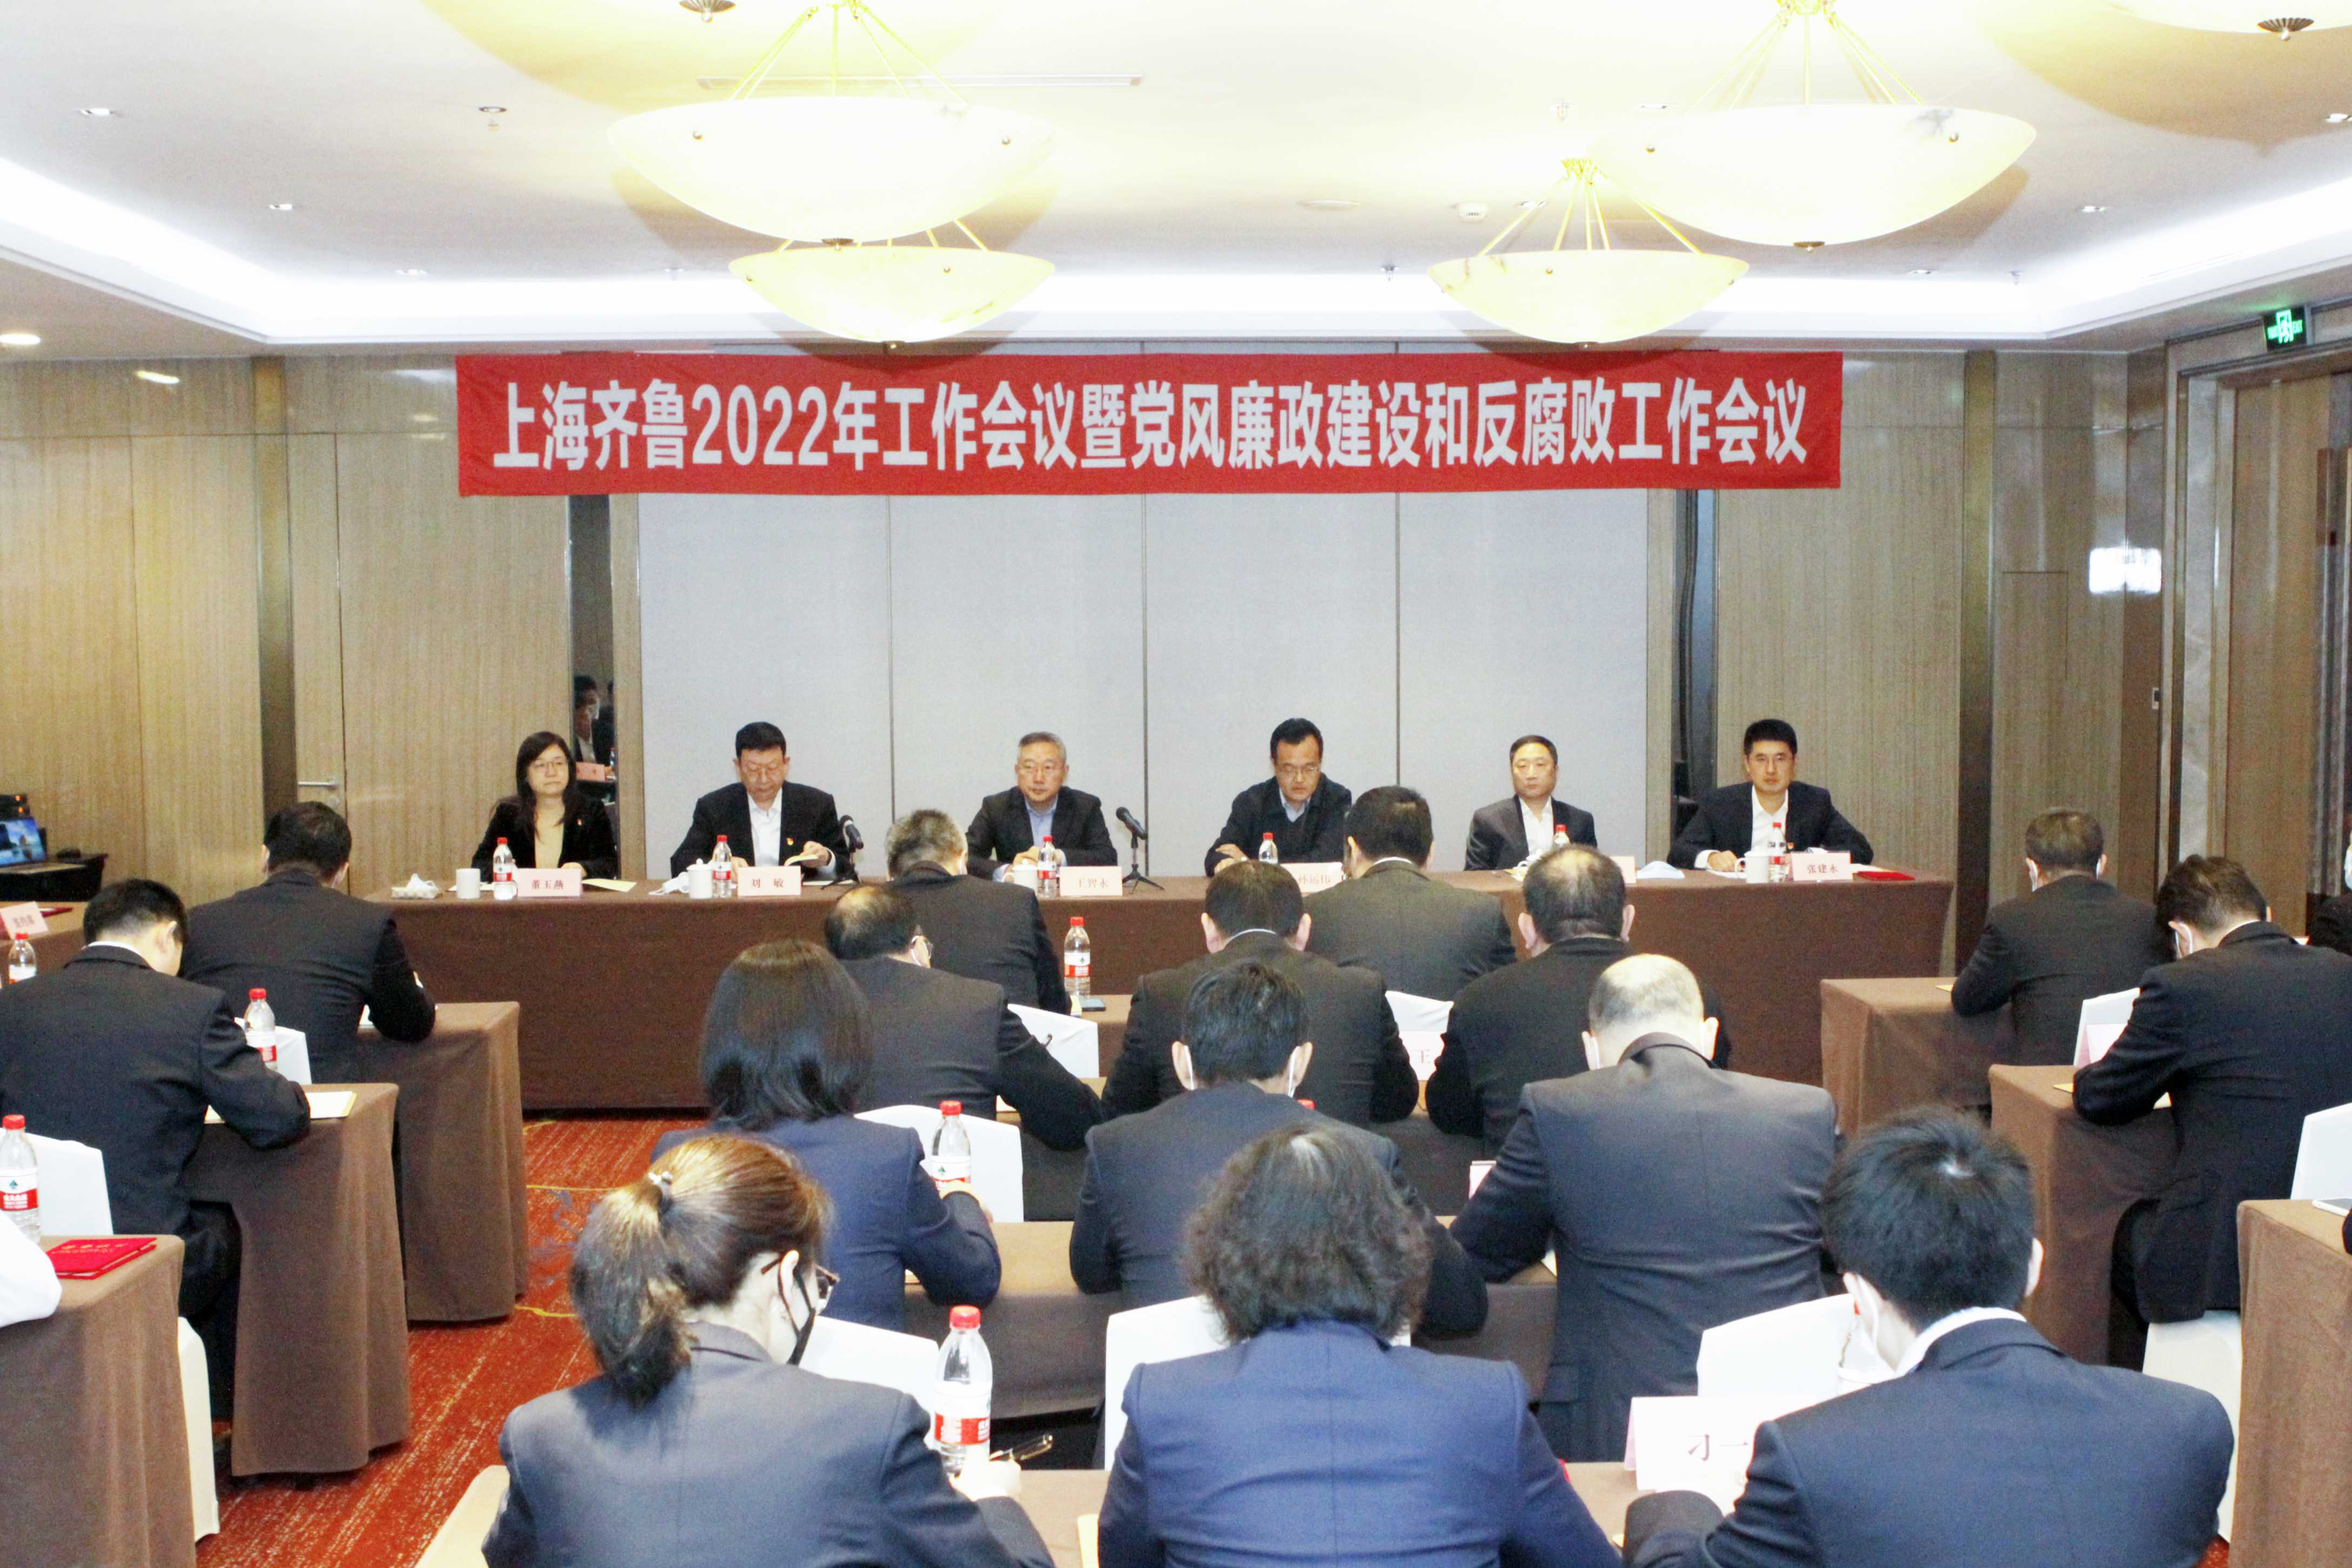 上海齐鲁公司召开2022年工作会议暨党风廉政和反腐败工作会议